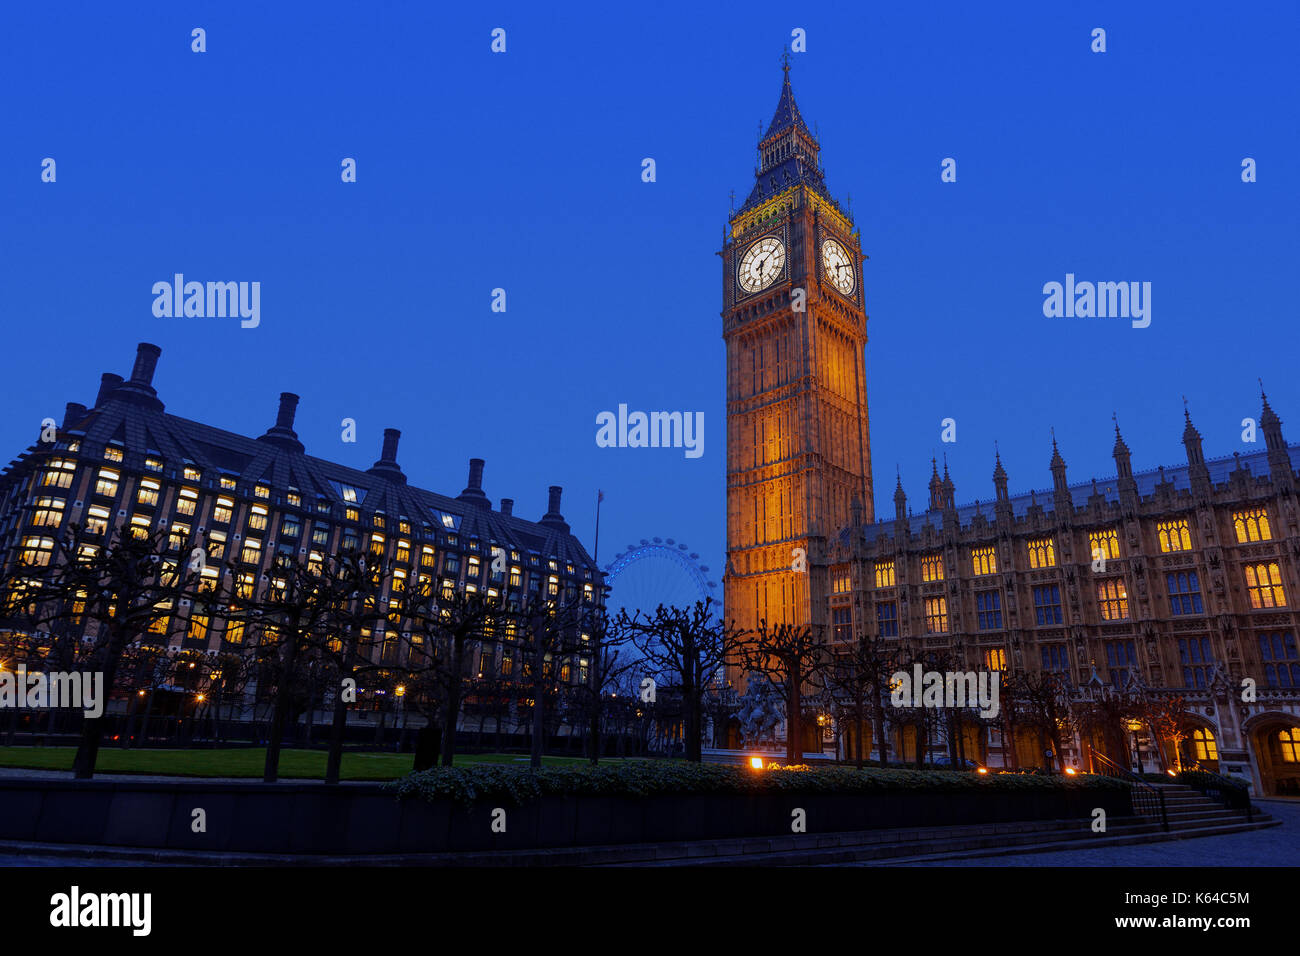 Vue de nuit du palais de Westminster, Big Ben et portcullis house à Westminster, England, UK Banque D'Images